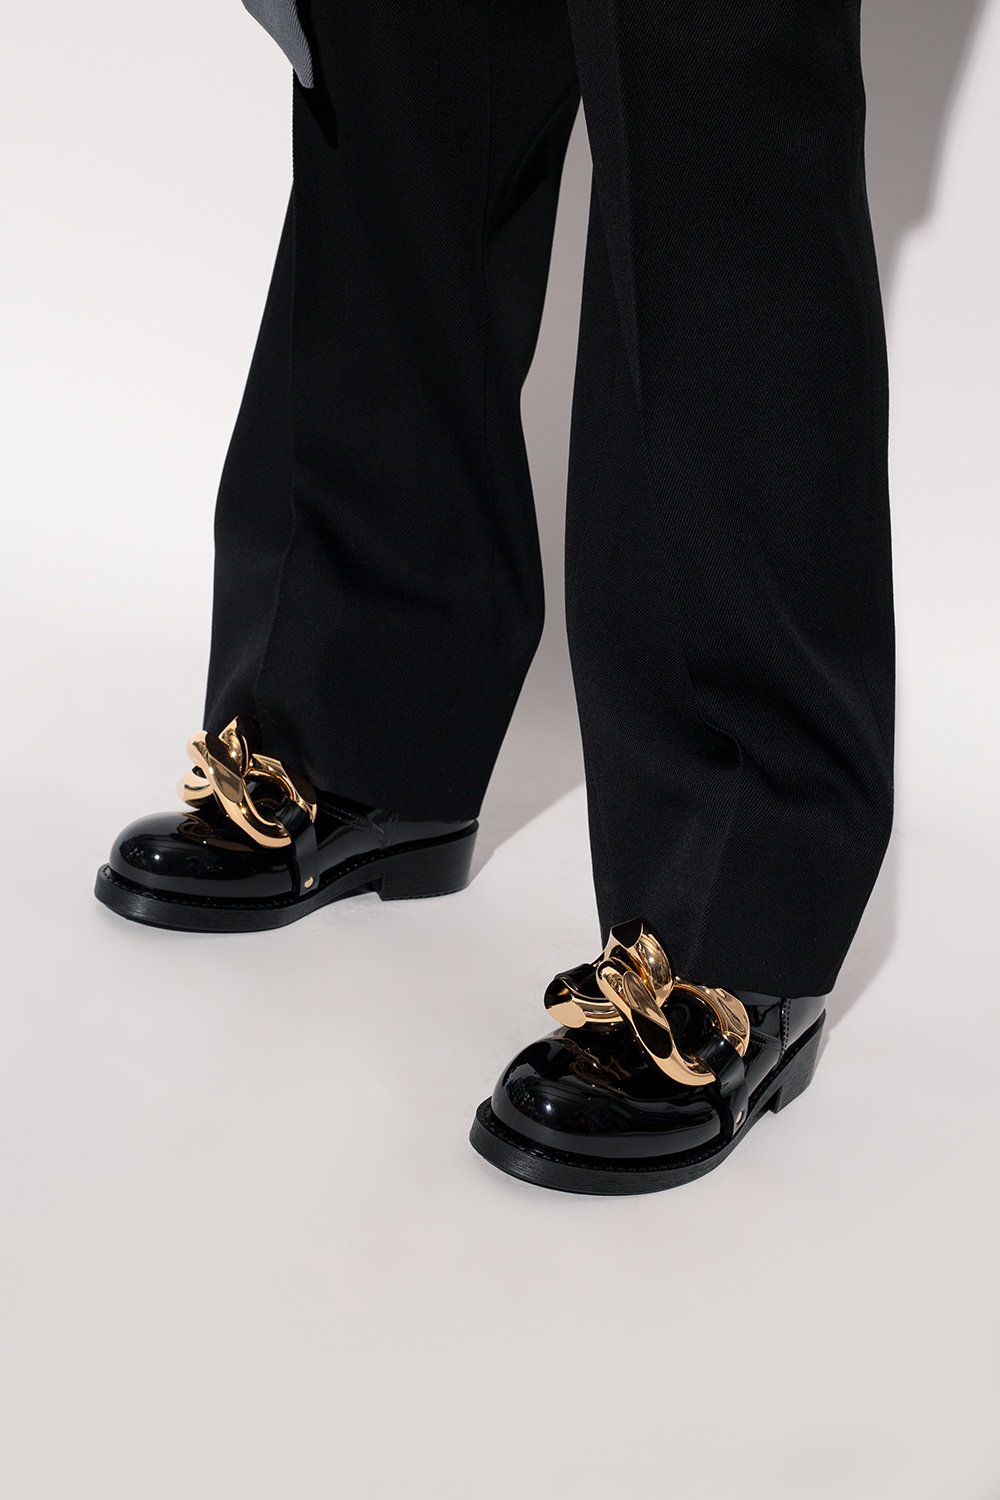 JW Anderson Short rain boots | Women's Shoes | Vitkac